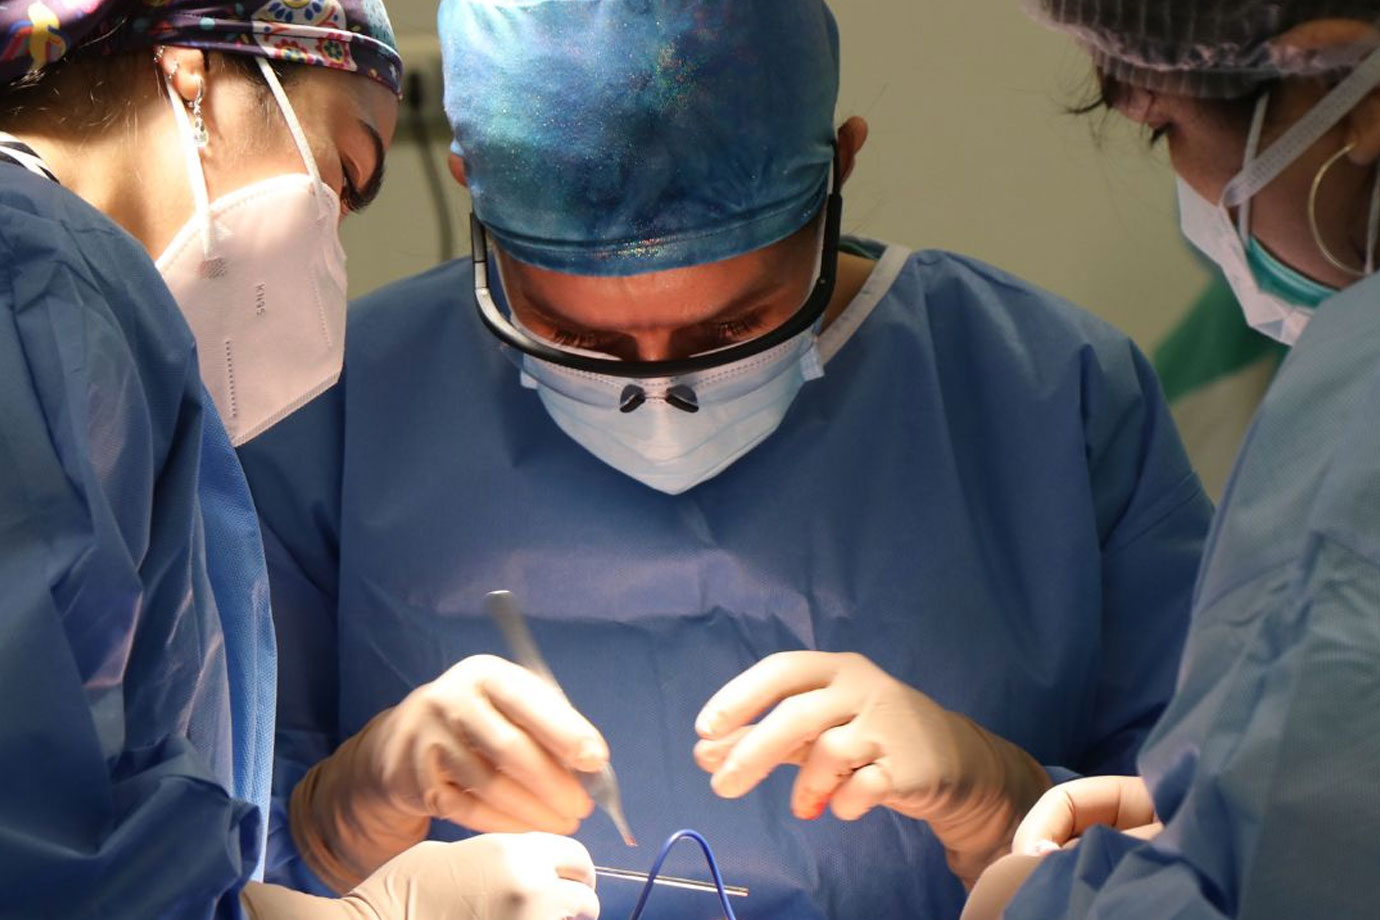 فیلم عمل جراحی فنستریشن اراکنویید کیست بطن 3 به روش اندوسکوپیک اپی لپسی